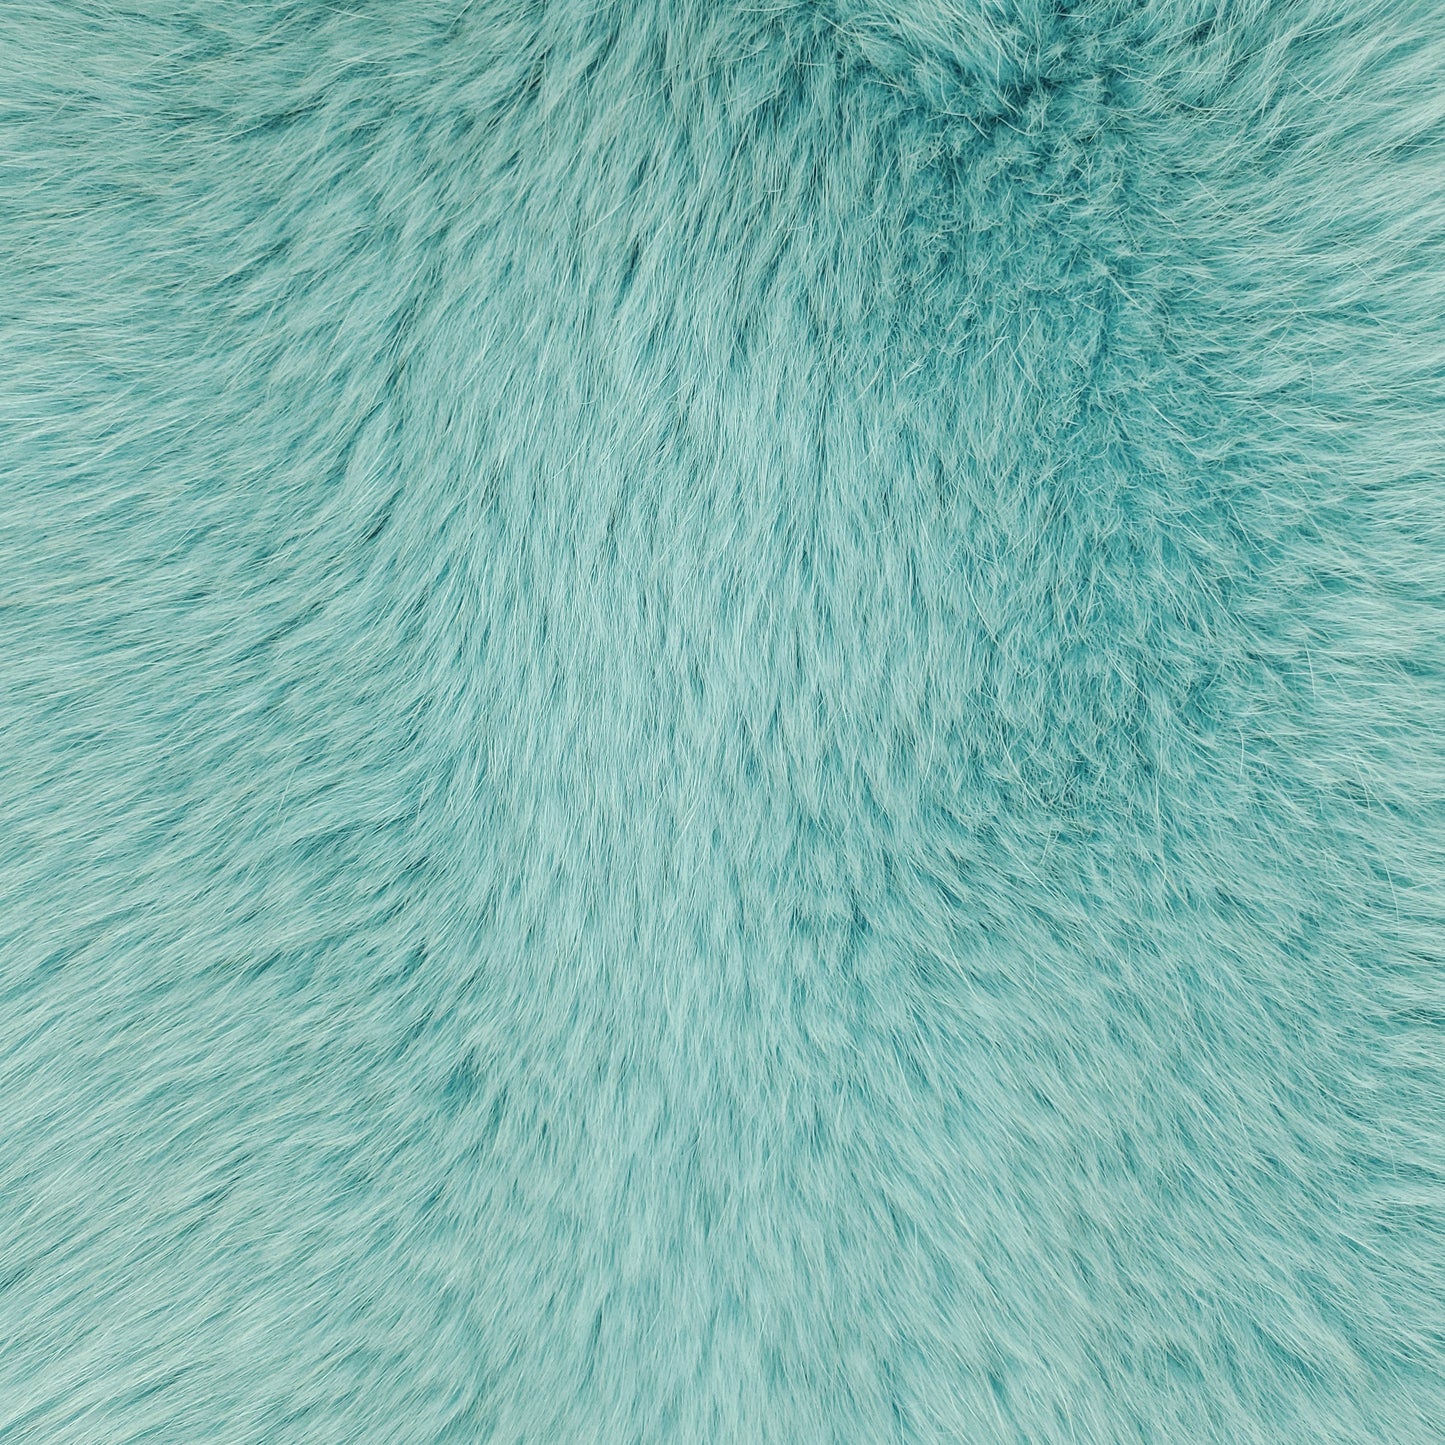 Dyed Shadow Fox Fur - Aqua